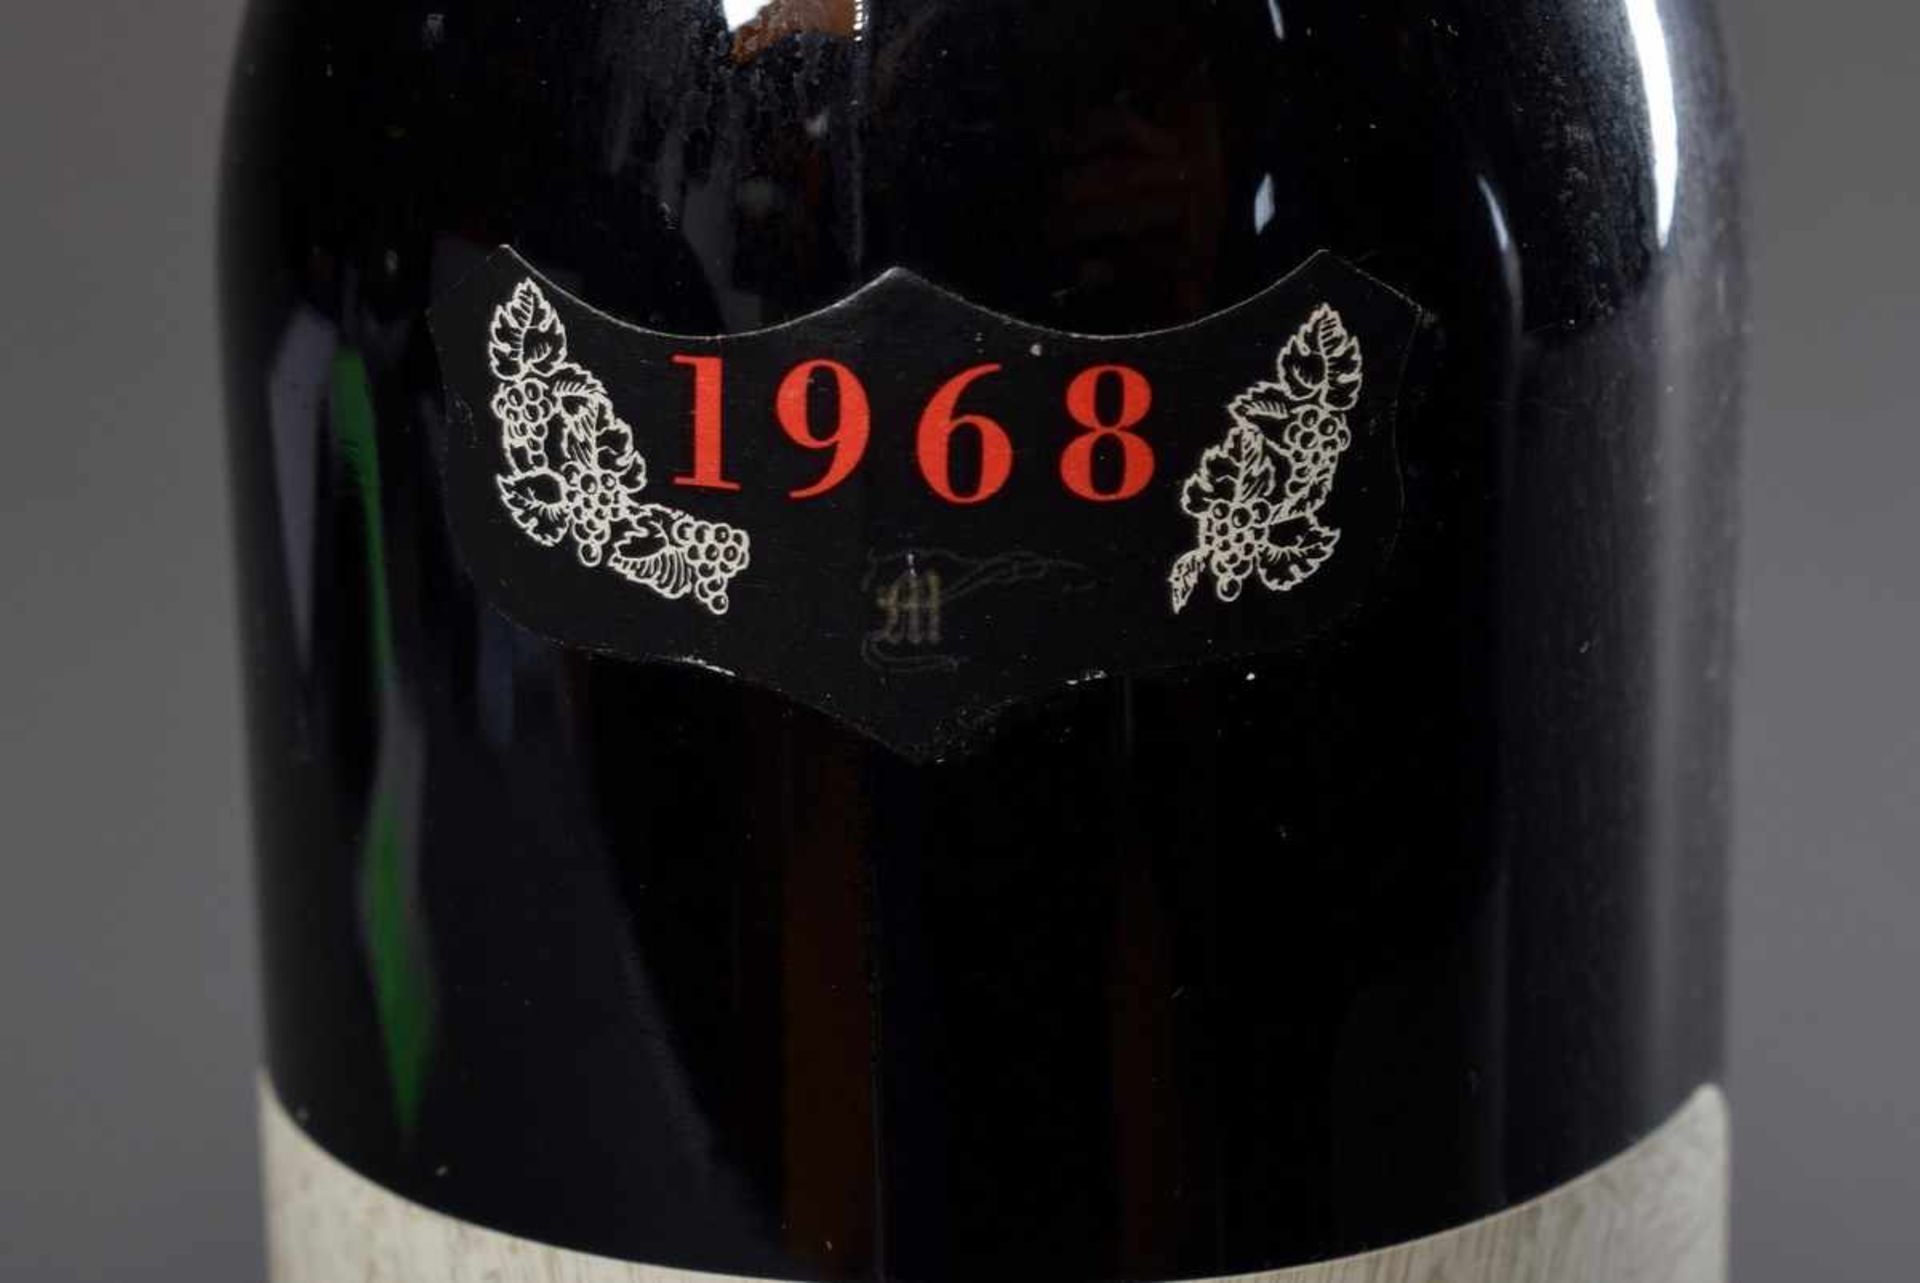 2 Flaschen Rotwein "Taurasi, Riserva, Mastroberardino", 1968, enthält Sulfite2 bottles of red - Image 5 of 5